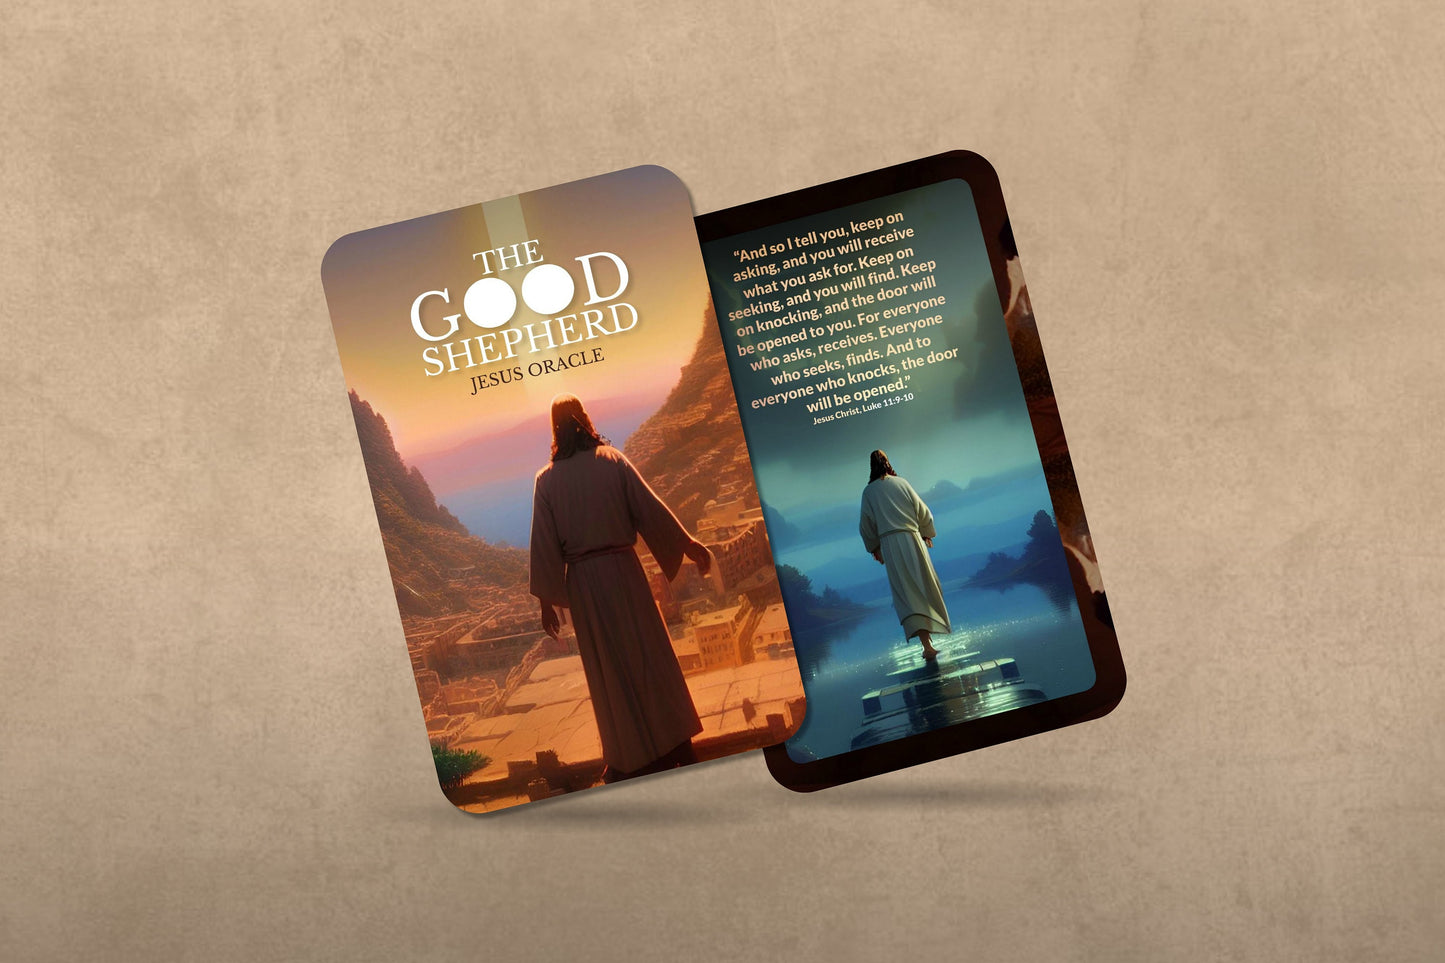 The Good Shepherd - Jesus Oracle